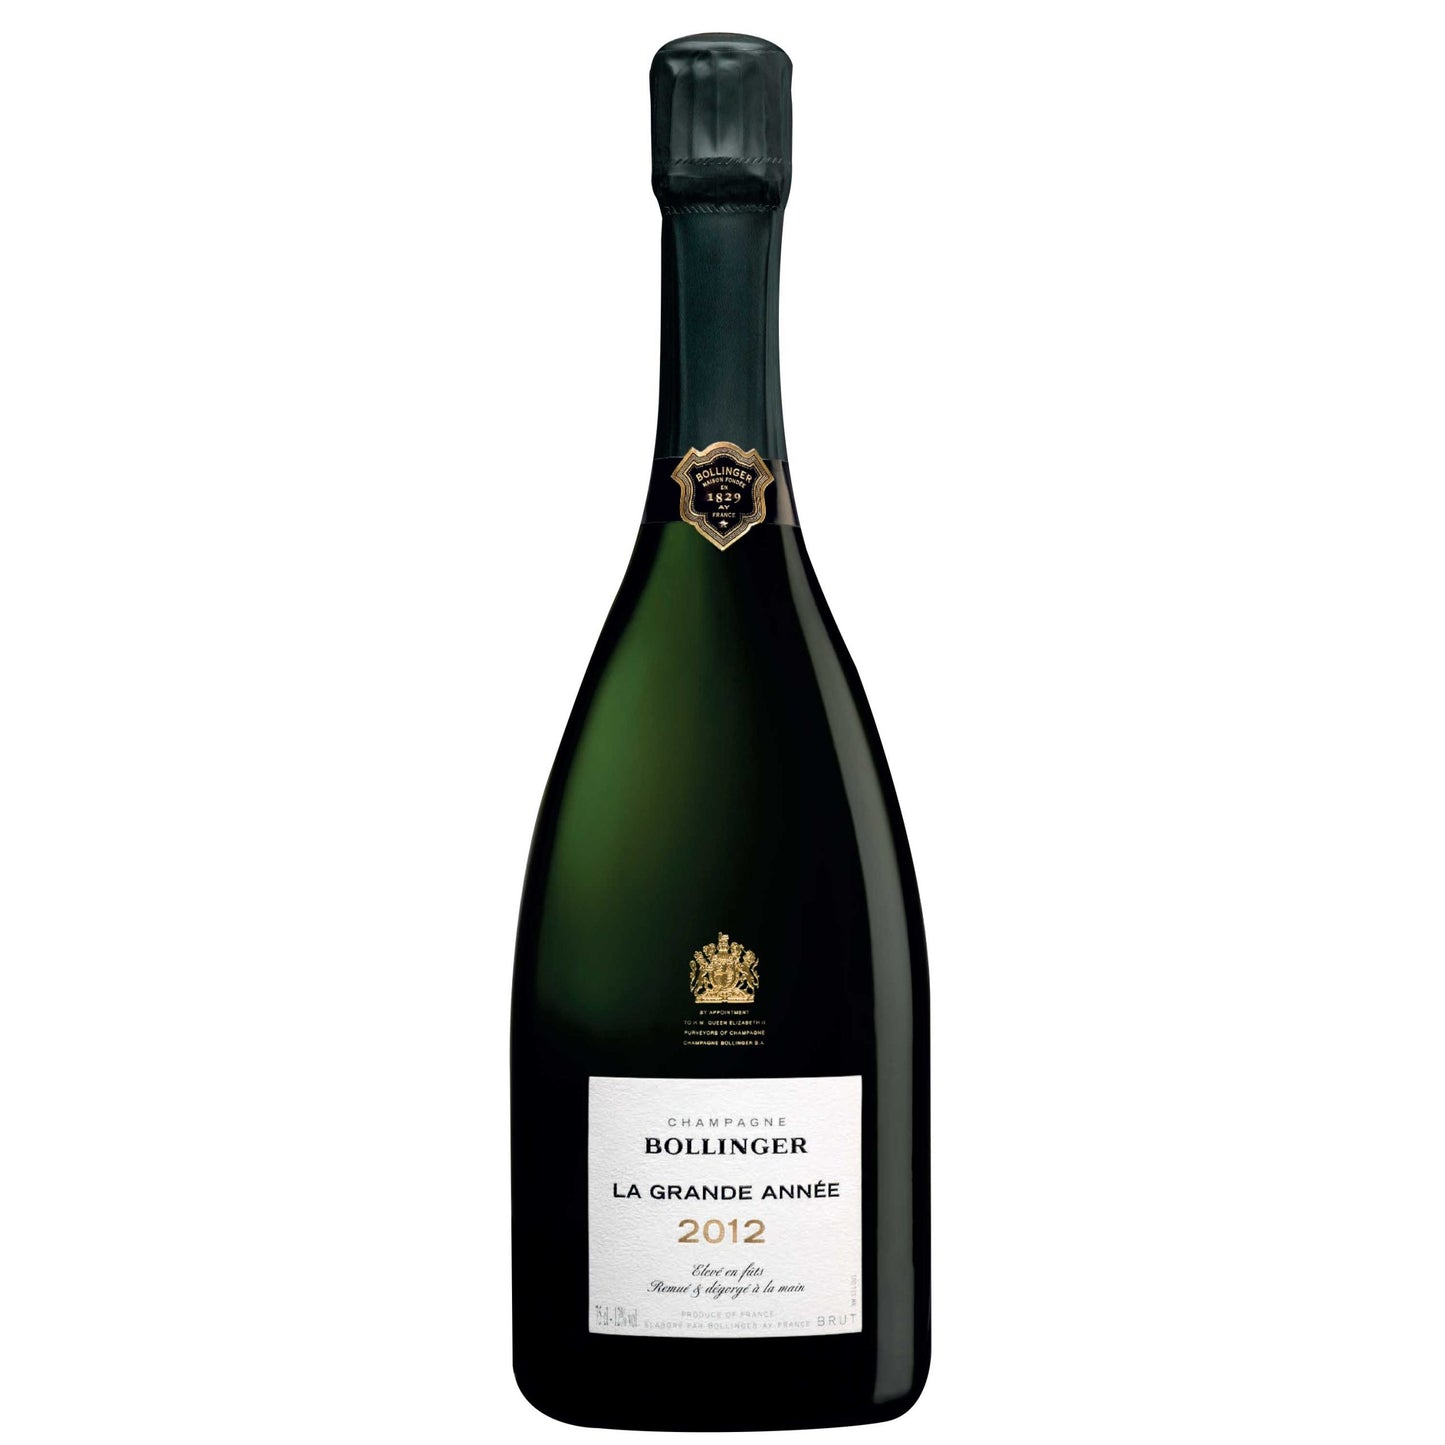 Bollinger La Grande Annee 2014 Champagne